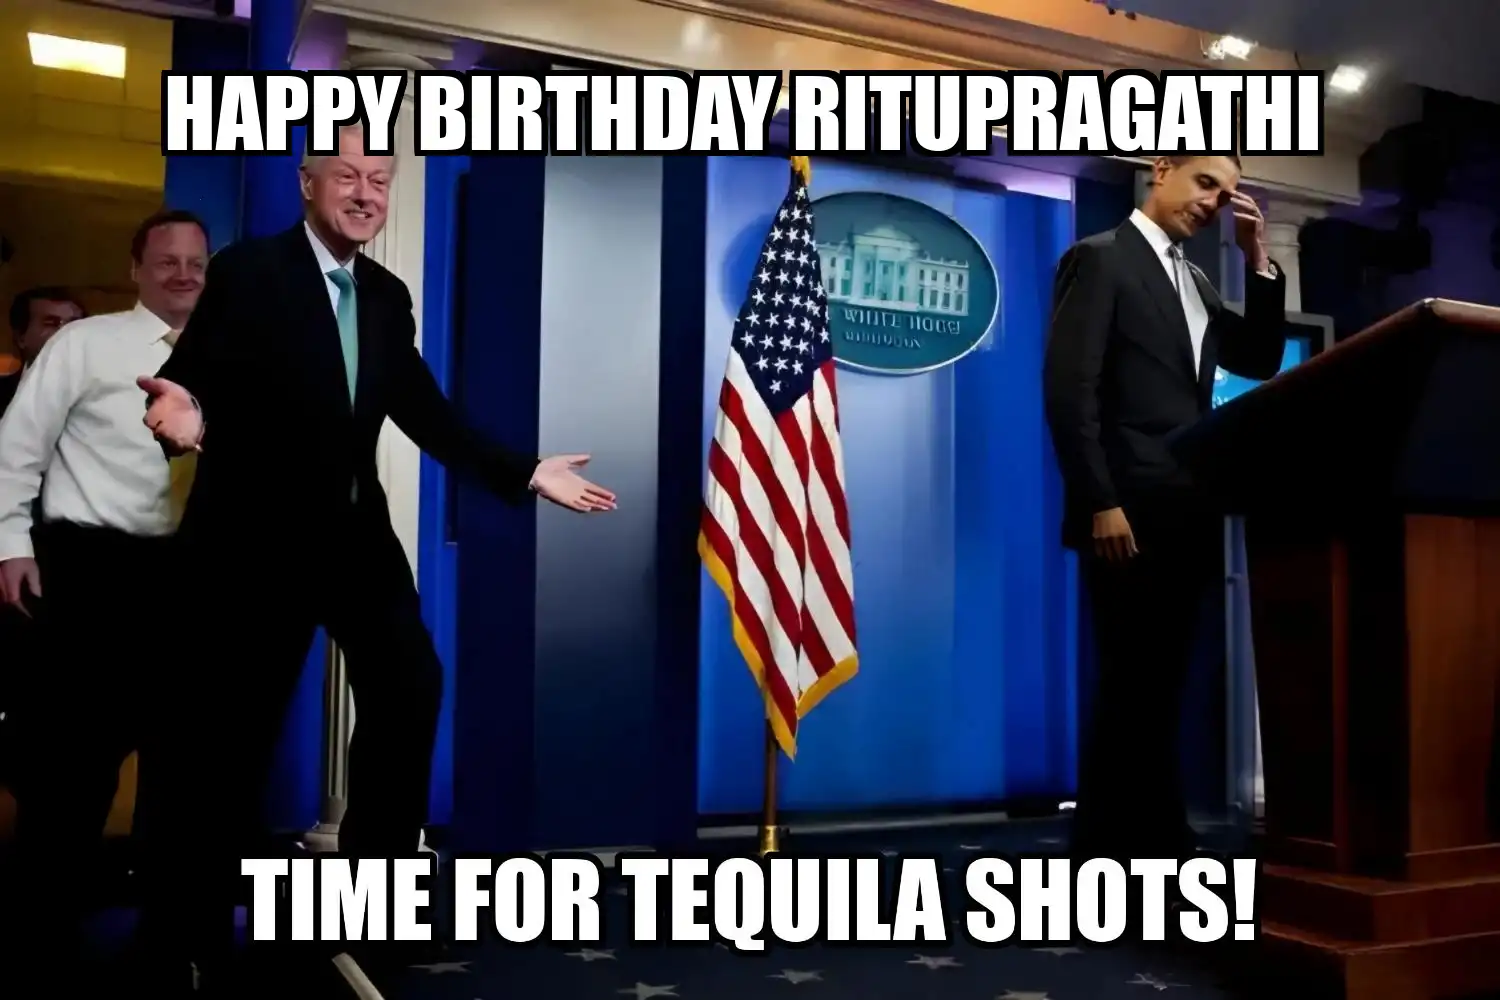 Happy Birthday Ritupragathi Time For Tequila Shots Memes